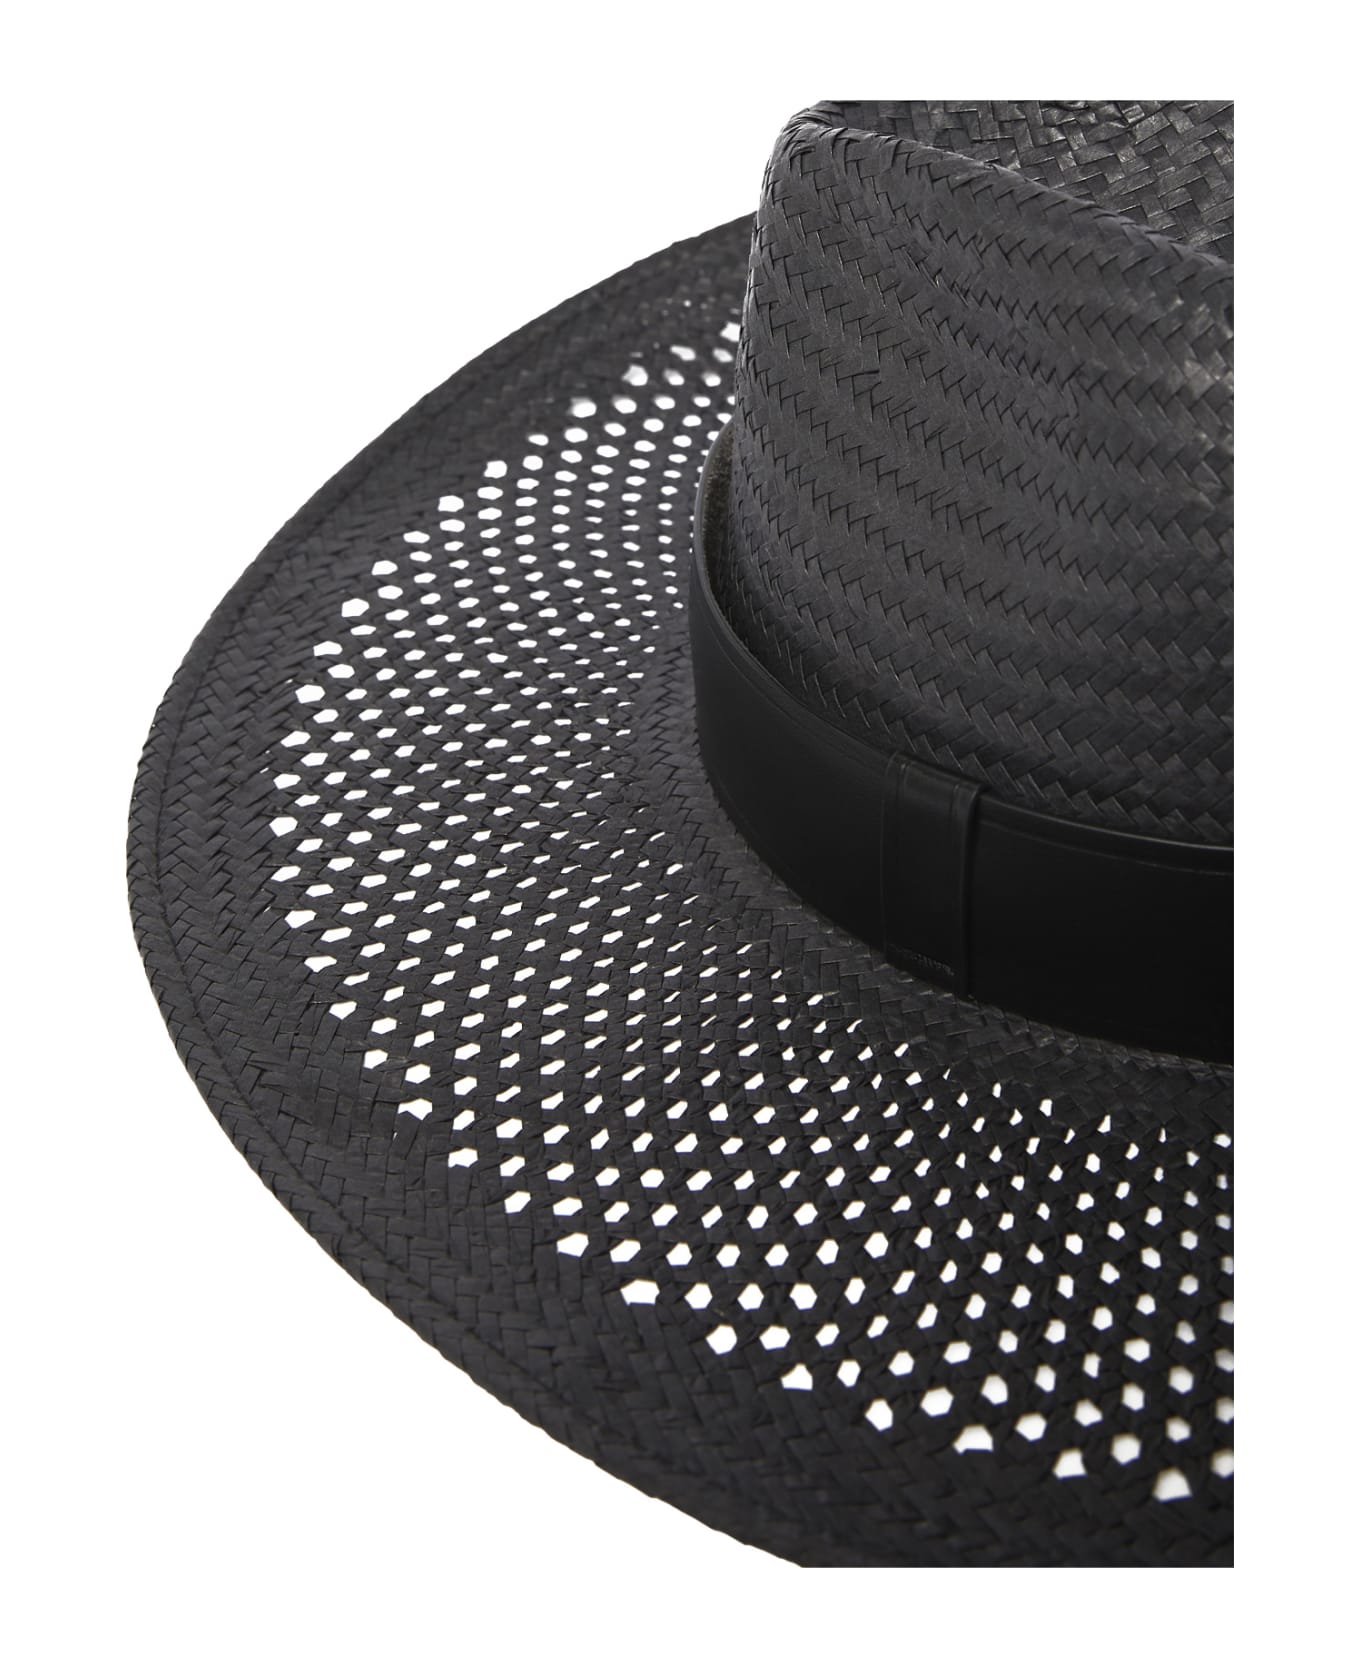 Max Mara Sidney Hat - Black 帽子